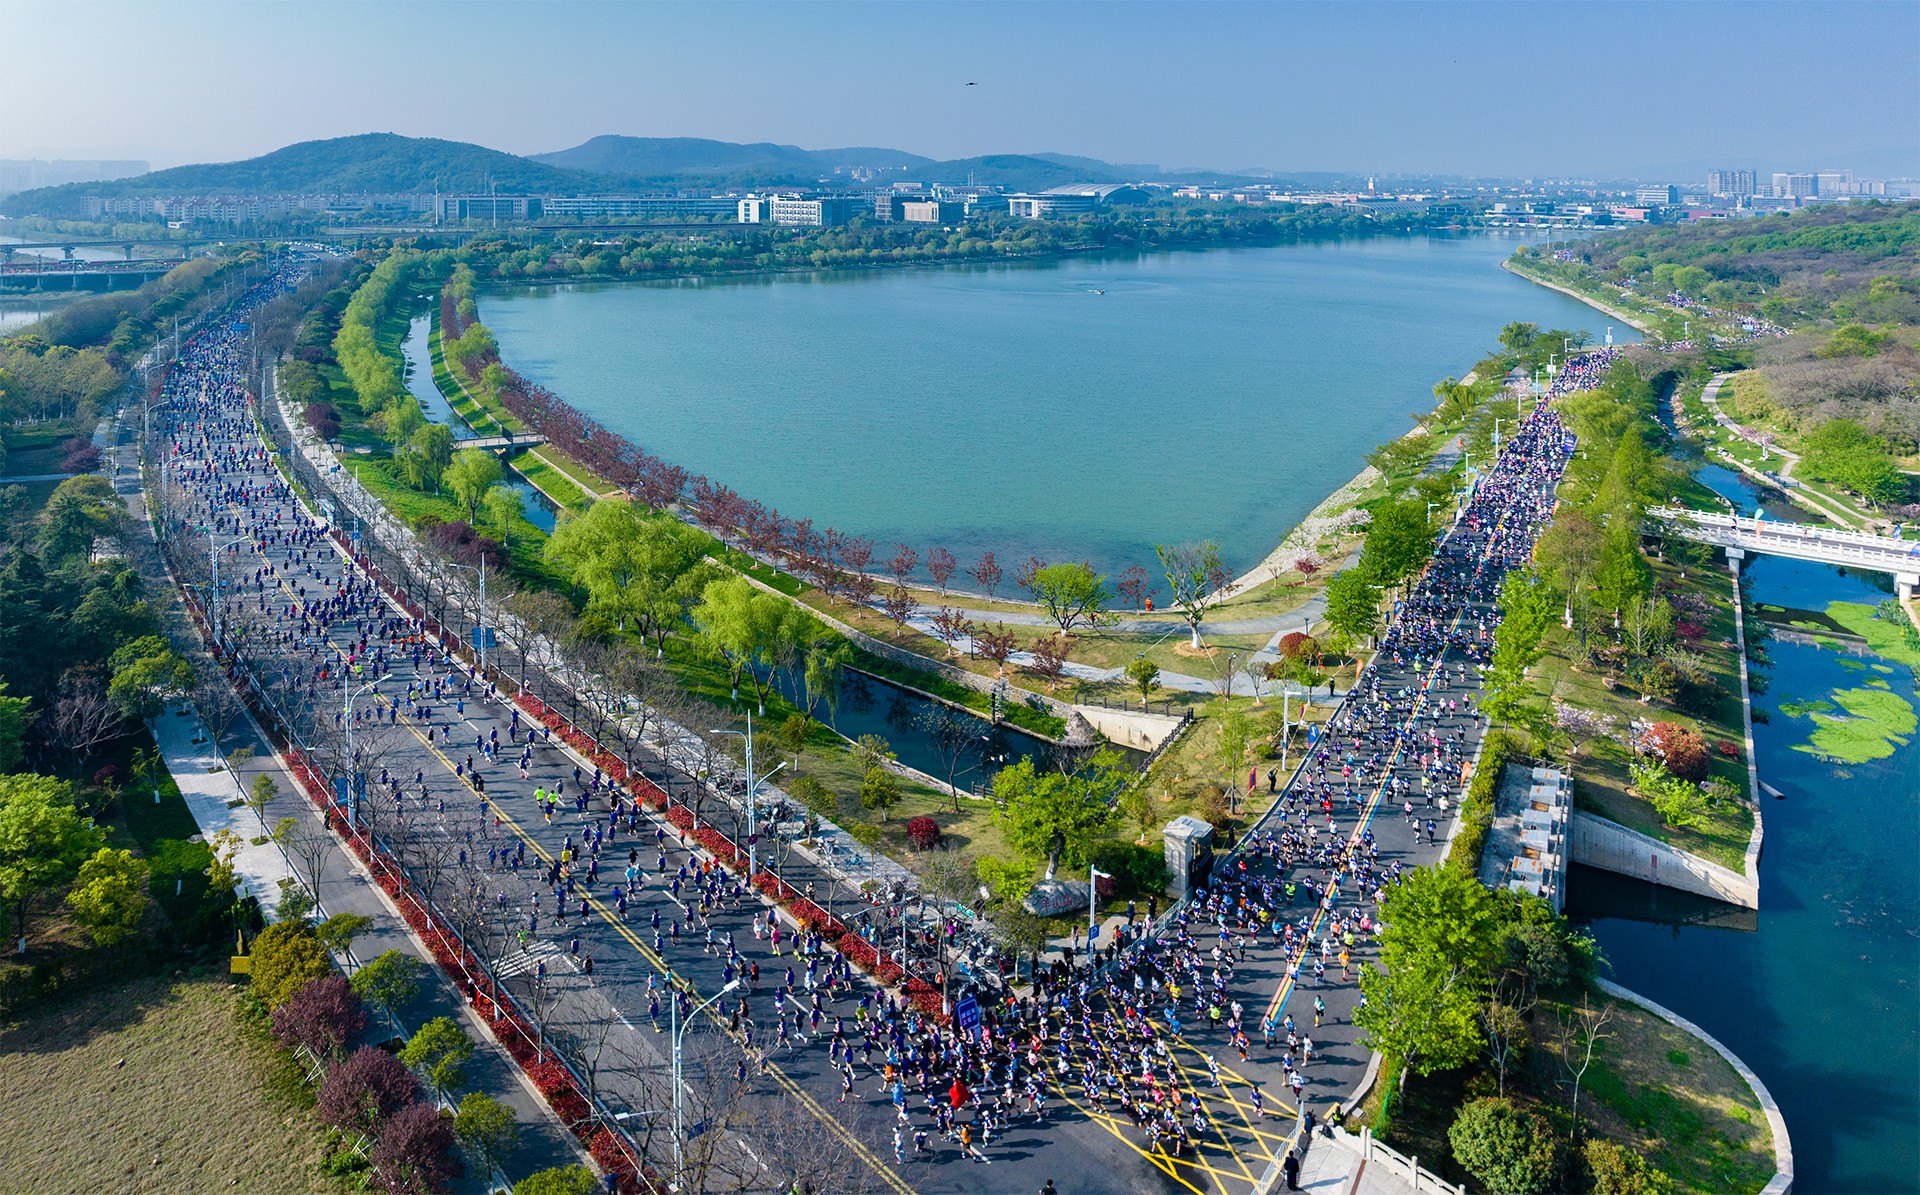 2023南京仙林半马开跑。